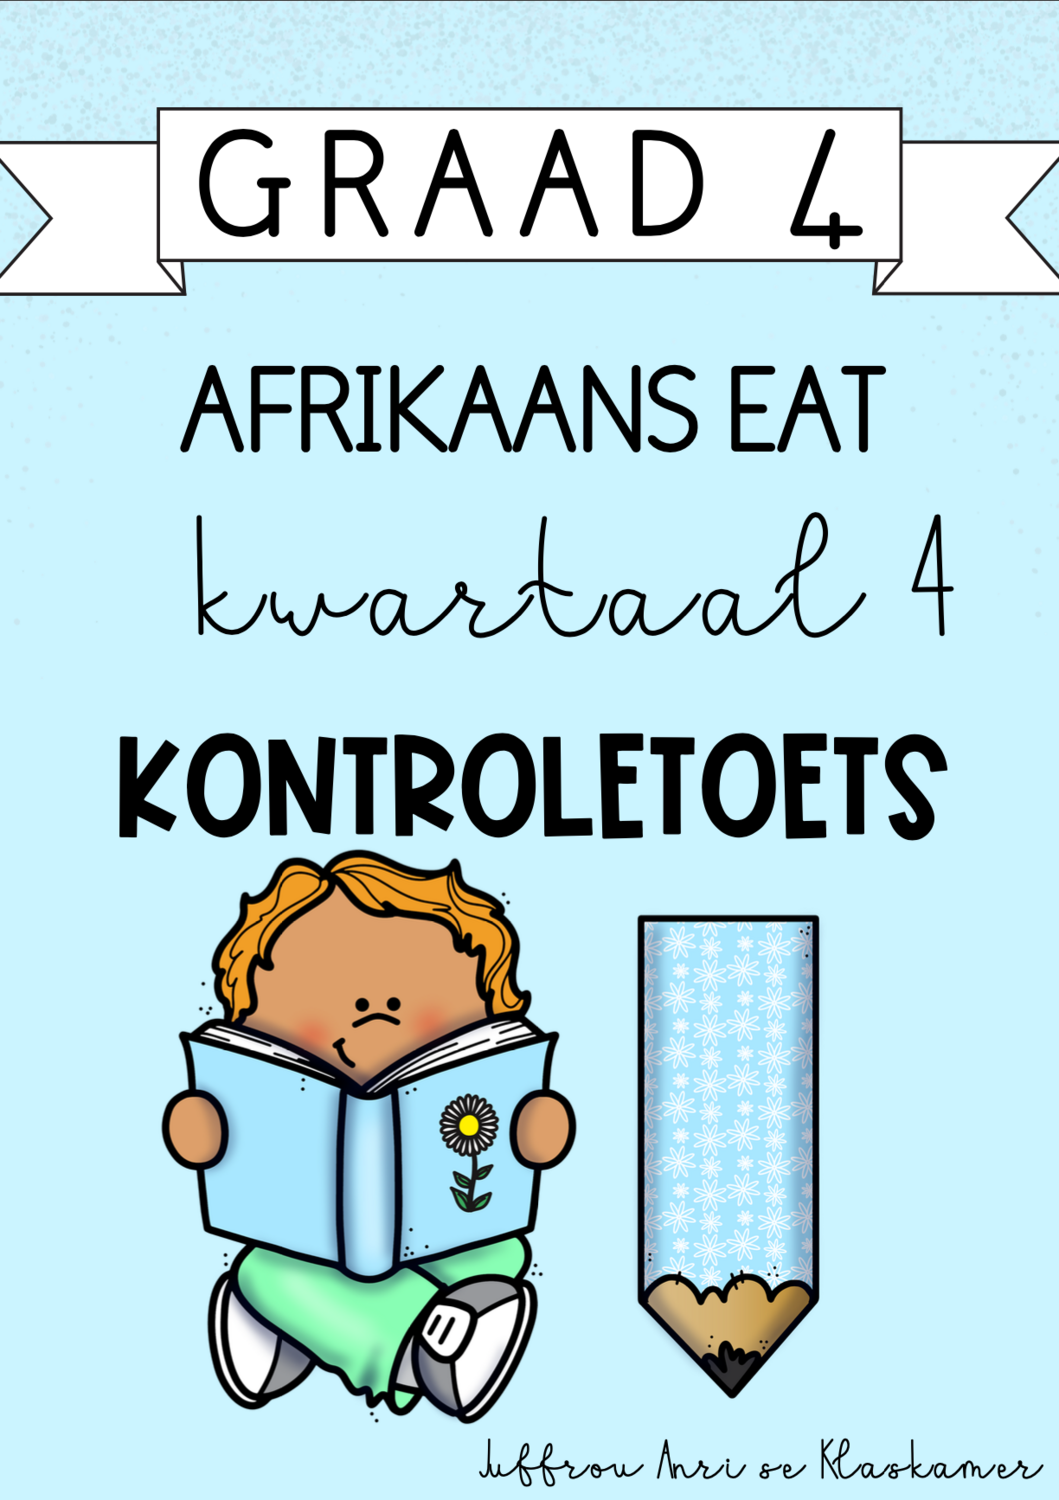 Graad 4 Afrikaans EAT kwartaal 4 kontroletoets (2023/2024)